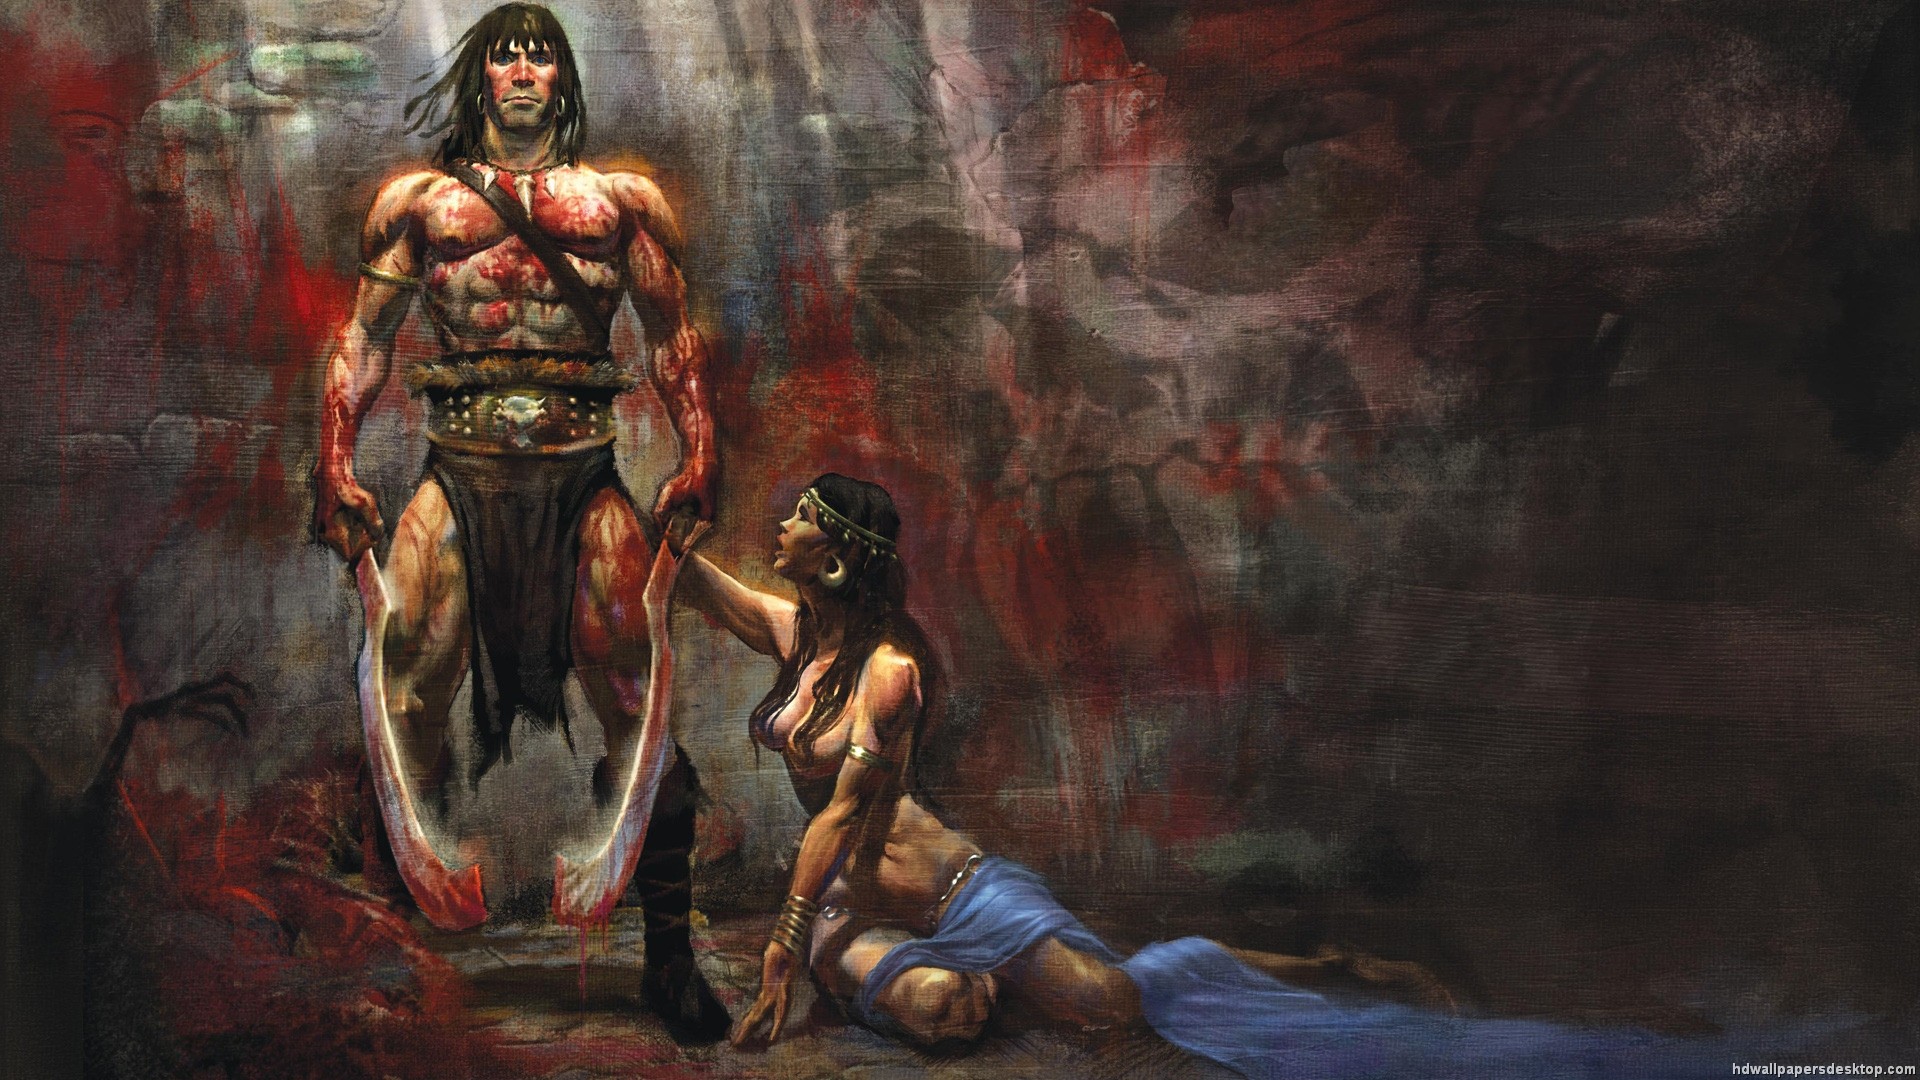 1920x1080, Conan The Barbarian Wallpaper Conan Red - Conan The Barbarian Wallpaper Hd - HD Wallpaper 